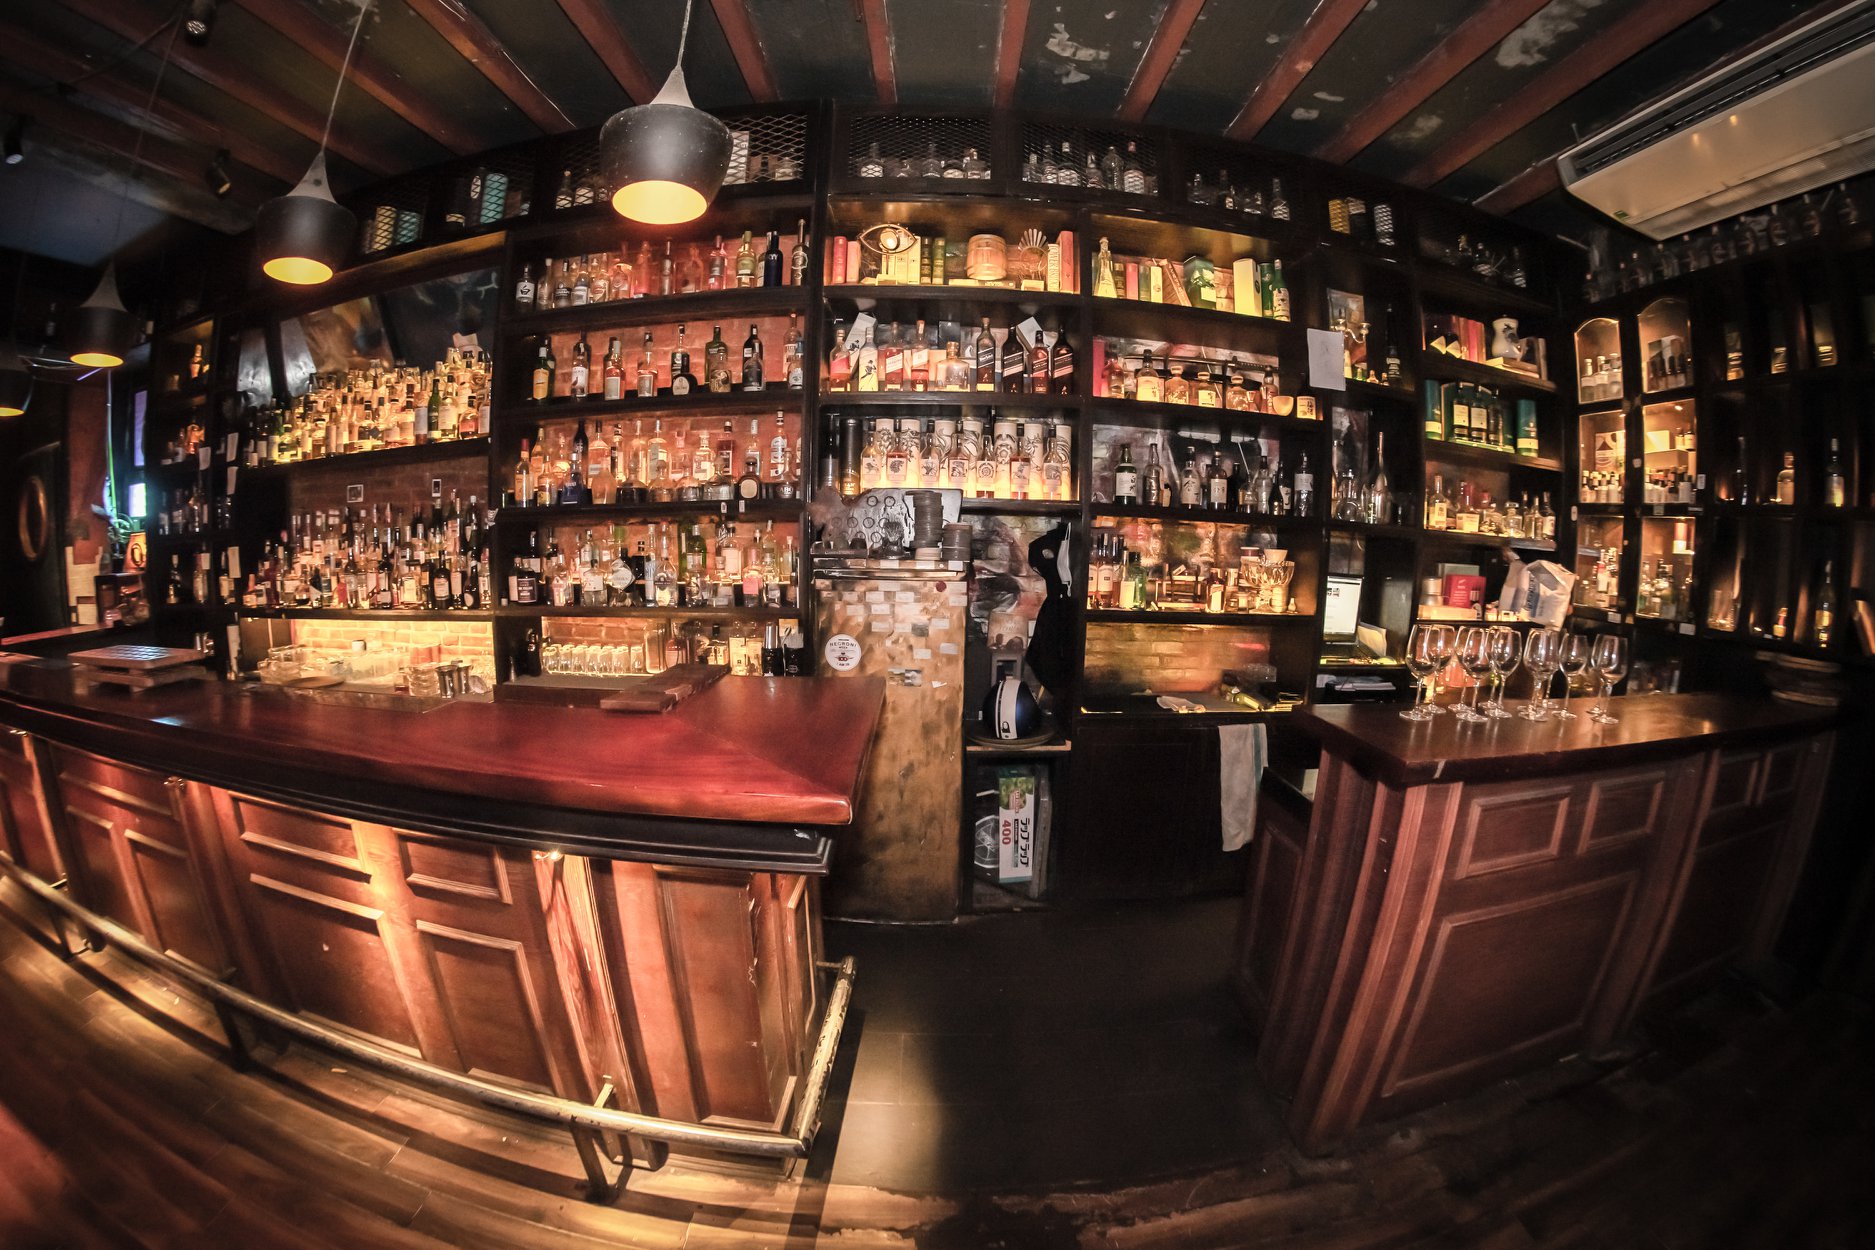 The Alchemist - Cocktail bar